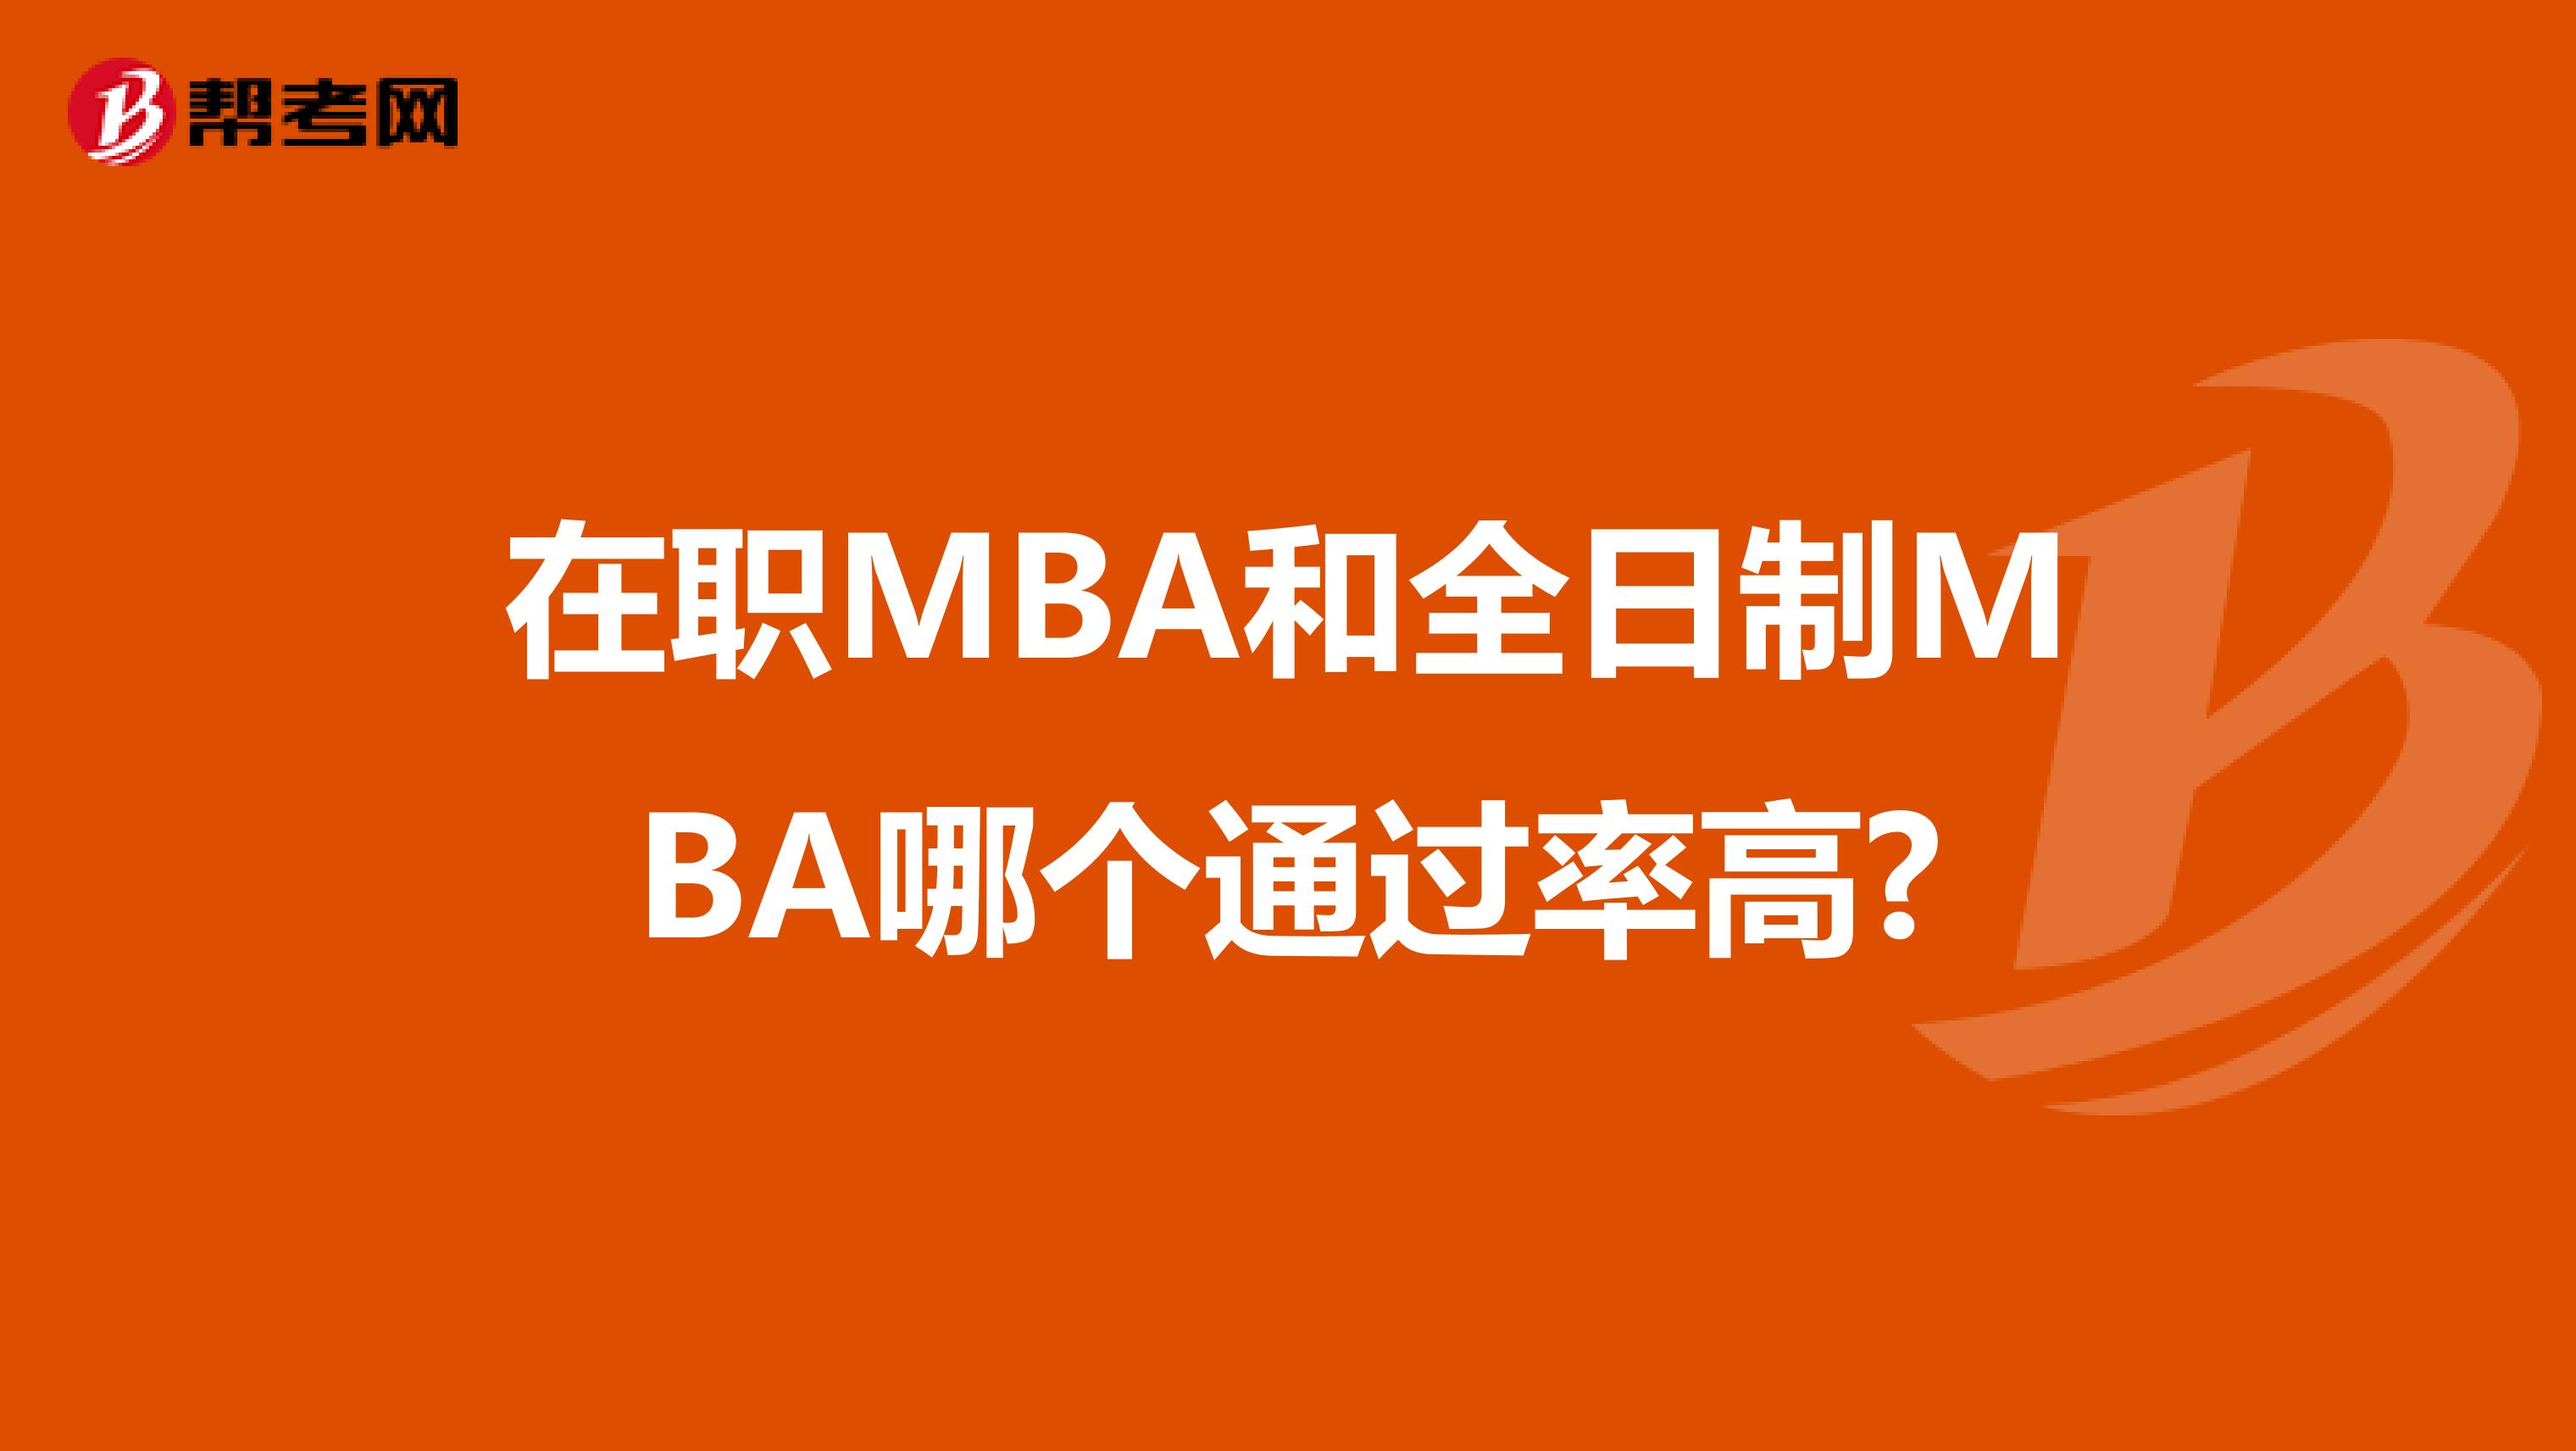 在职MBA和全日制MBA哪个通过率高?